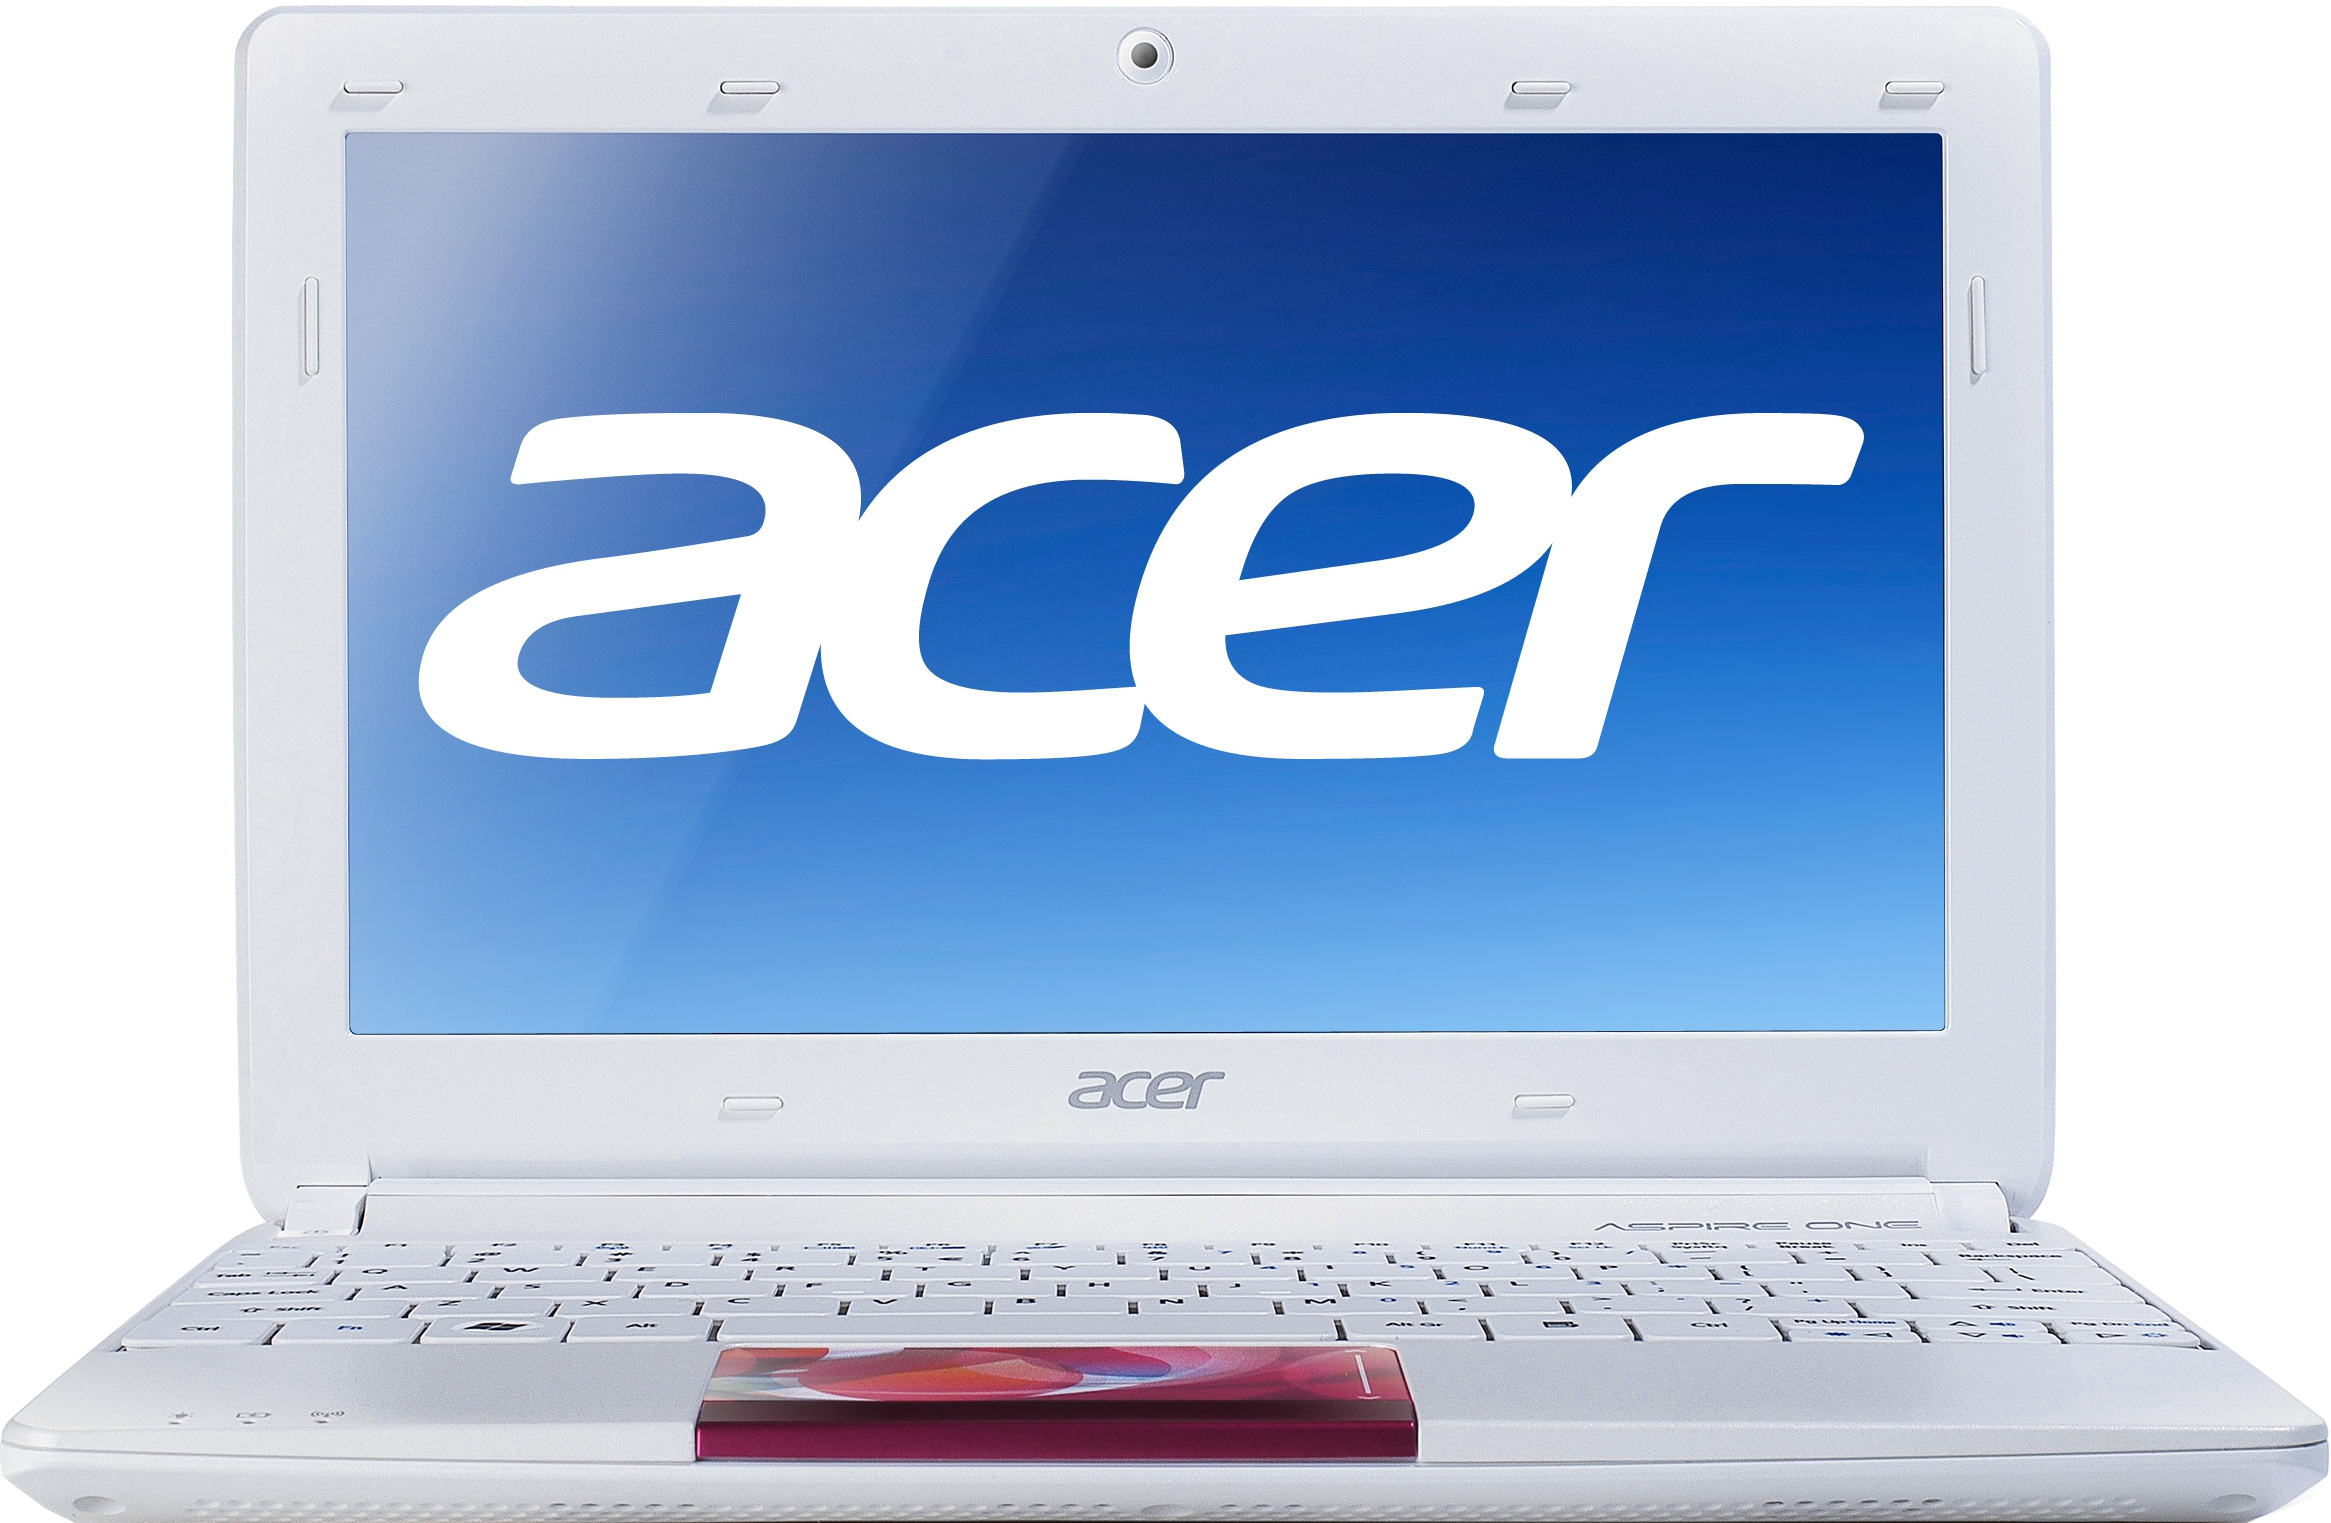 Acer Aspire one d270. Ноутбук Acer Aspire one d270. Ноутбук Acer Aspire one aod270-268blw. D270 Acer Aspire. Купить новый ноутбук в ростове